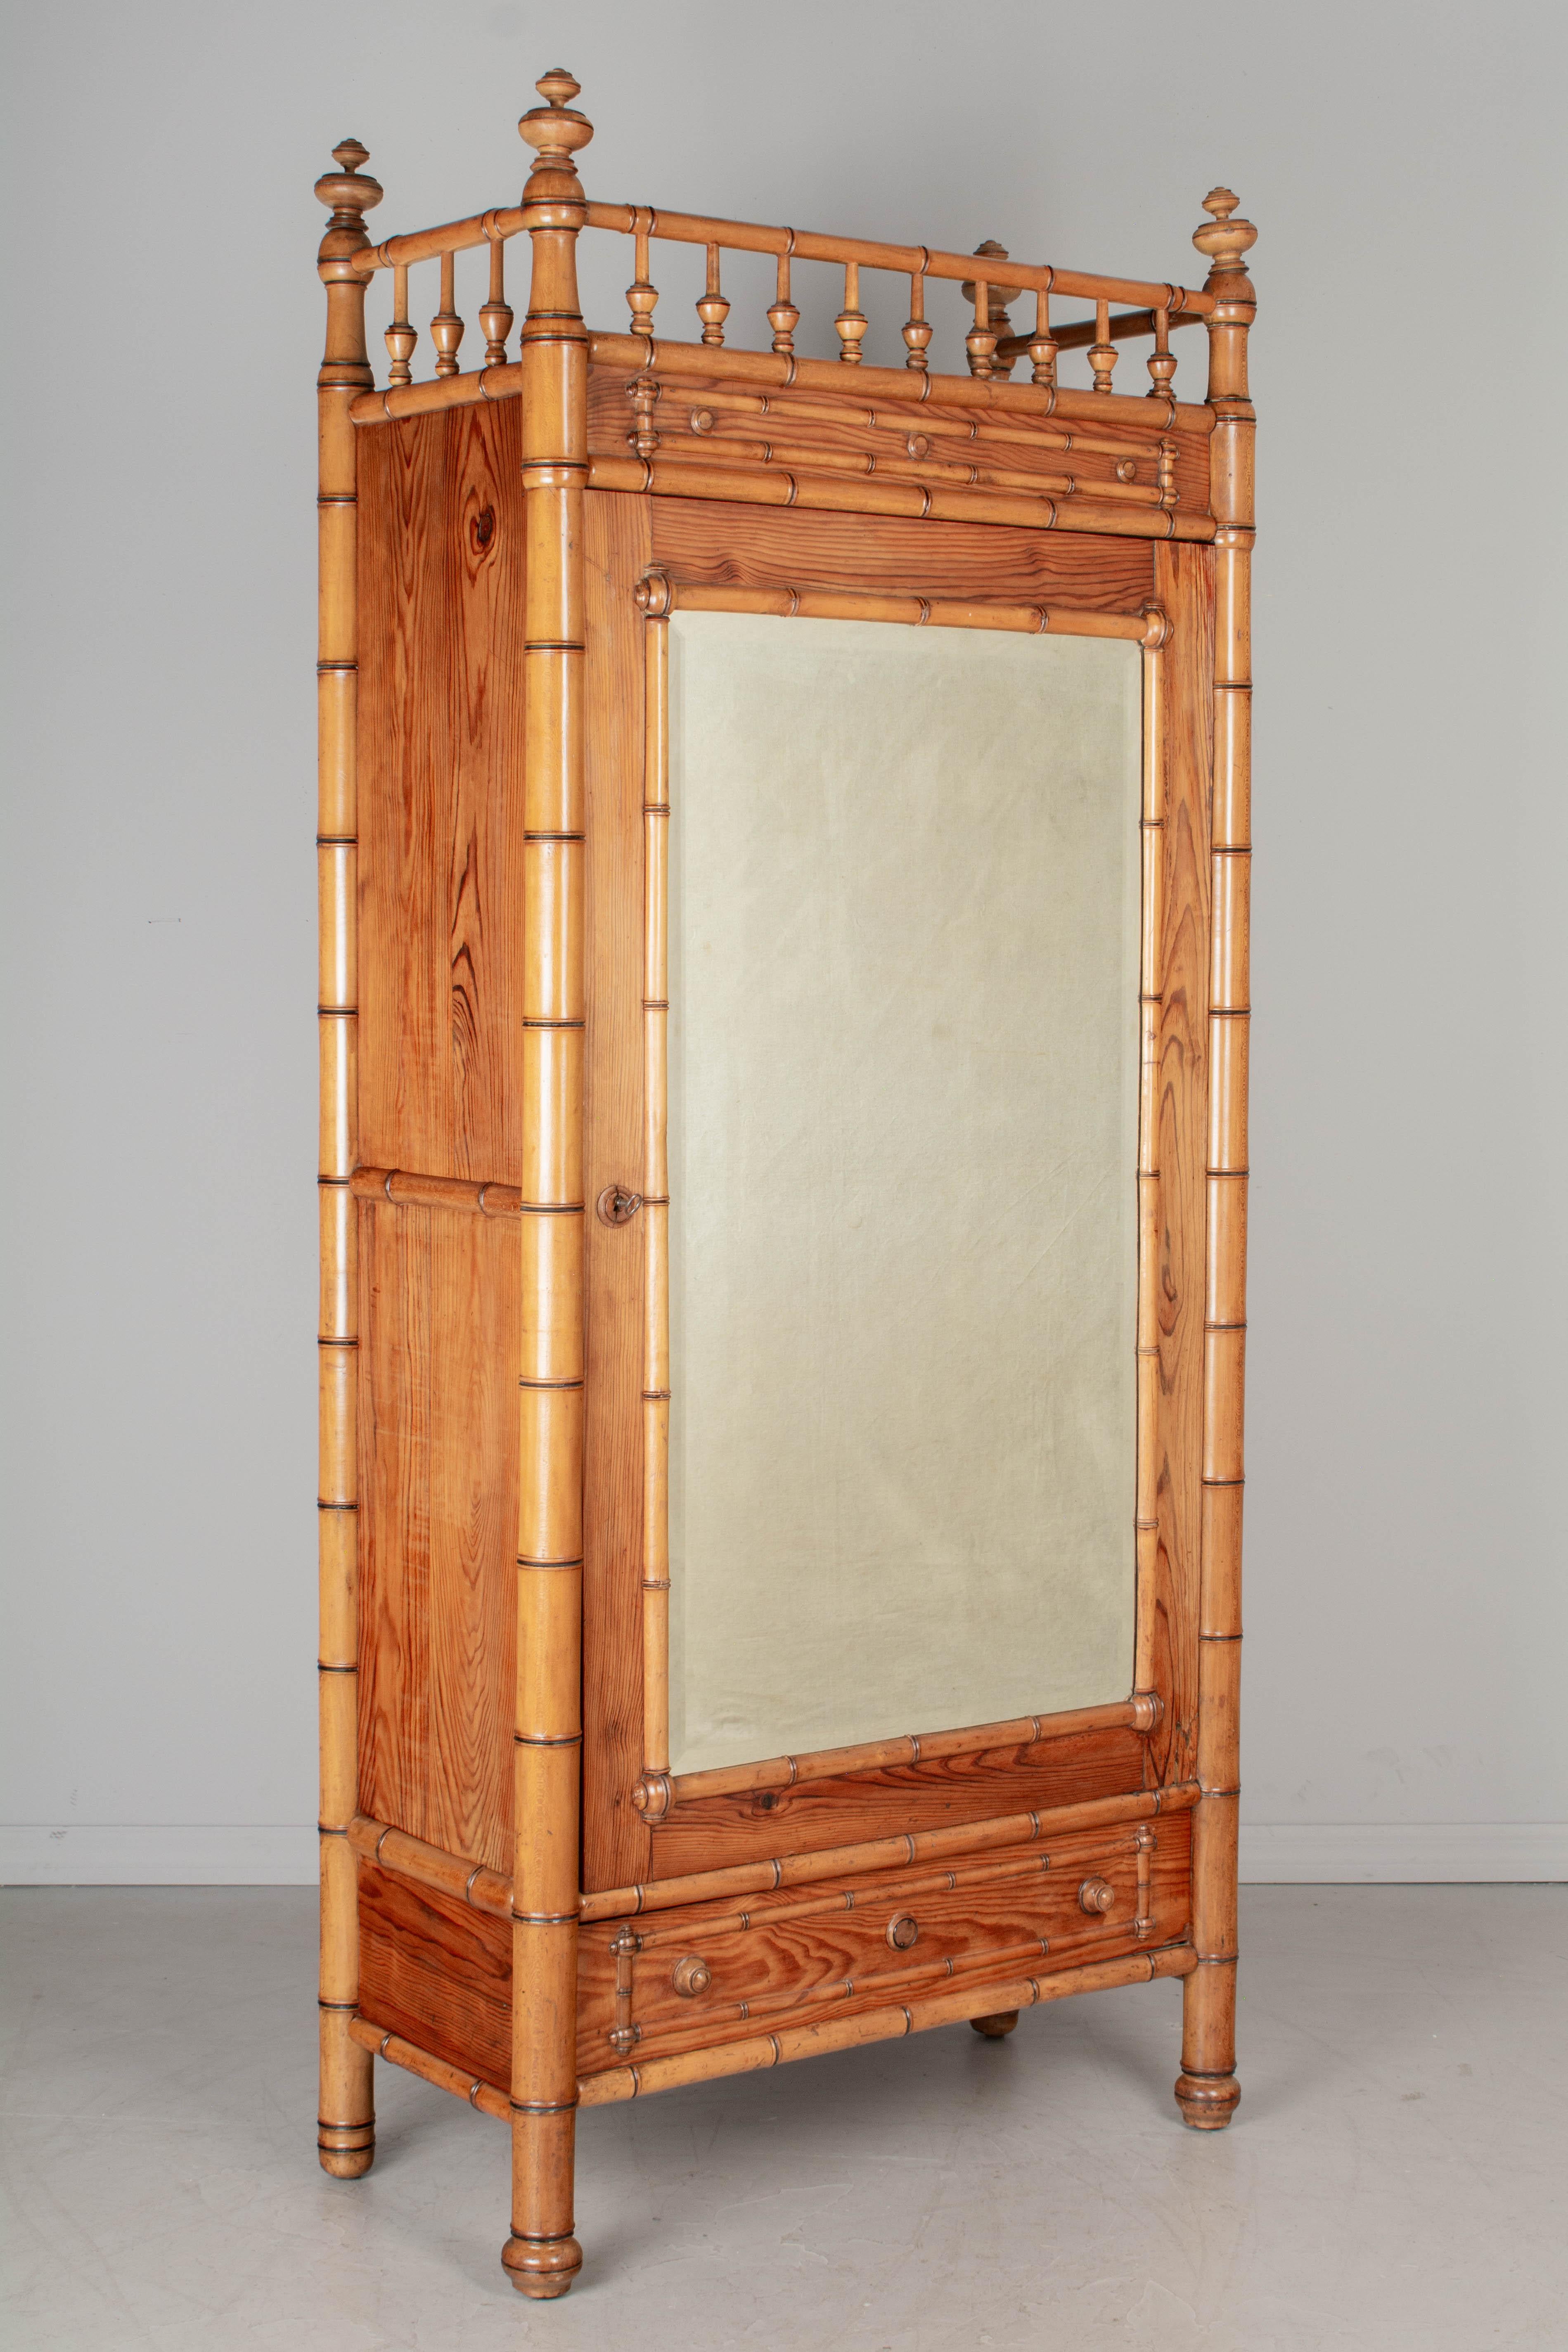 Armoire française en faux bambou du 19e siècle, en pitch pin avec des détails en faux bambou en bois de hêtre massif. La porte en miroir biseauté s'ouvre sur un intérieur doté de trois étagères réglables. Un tiroir à queue d'aronde sous la porte. La